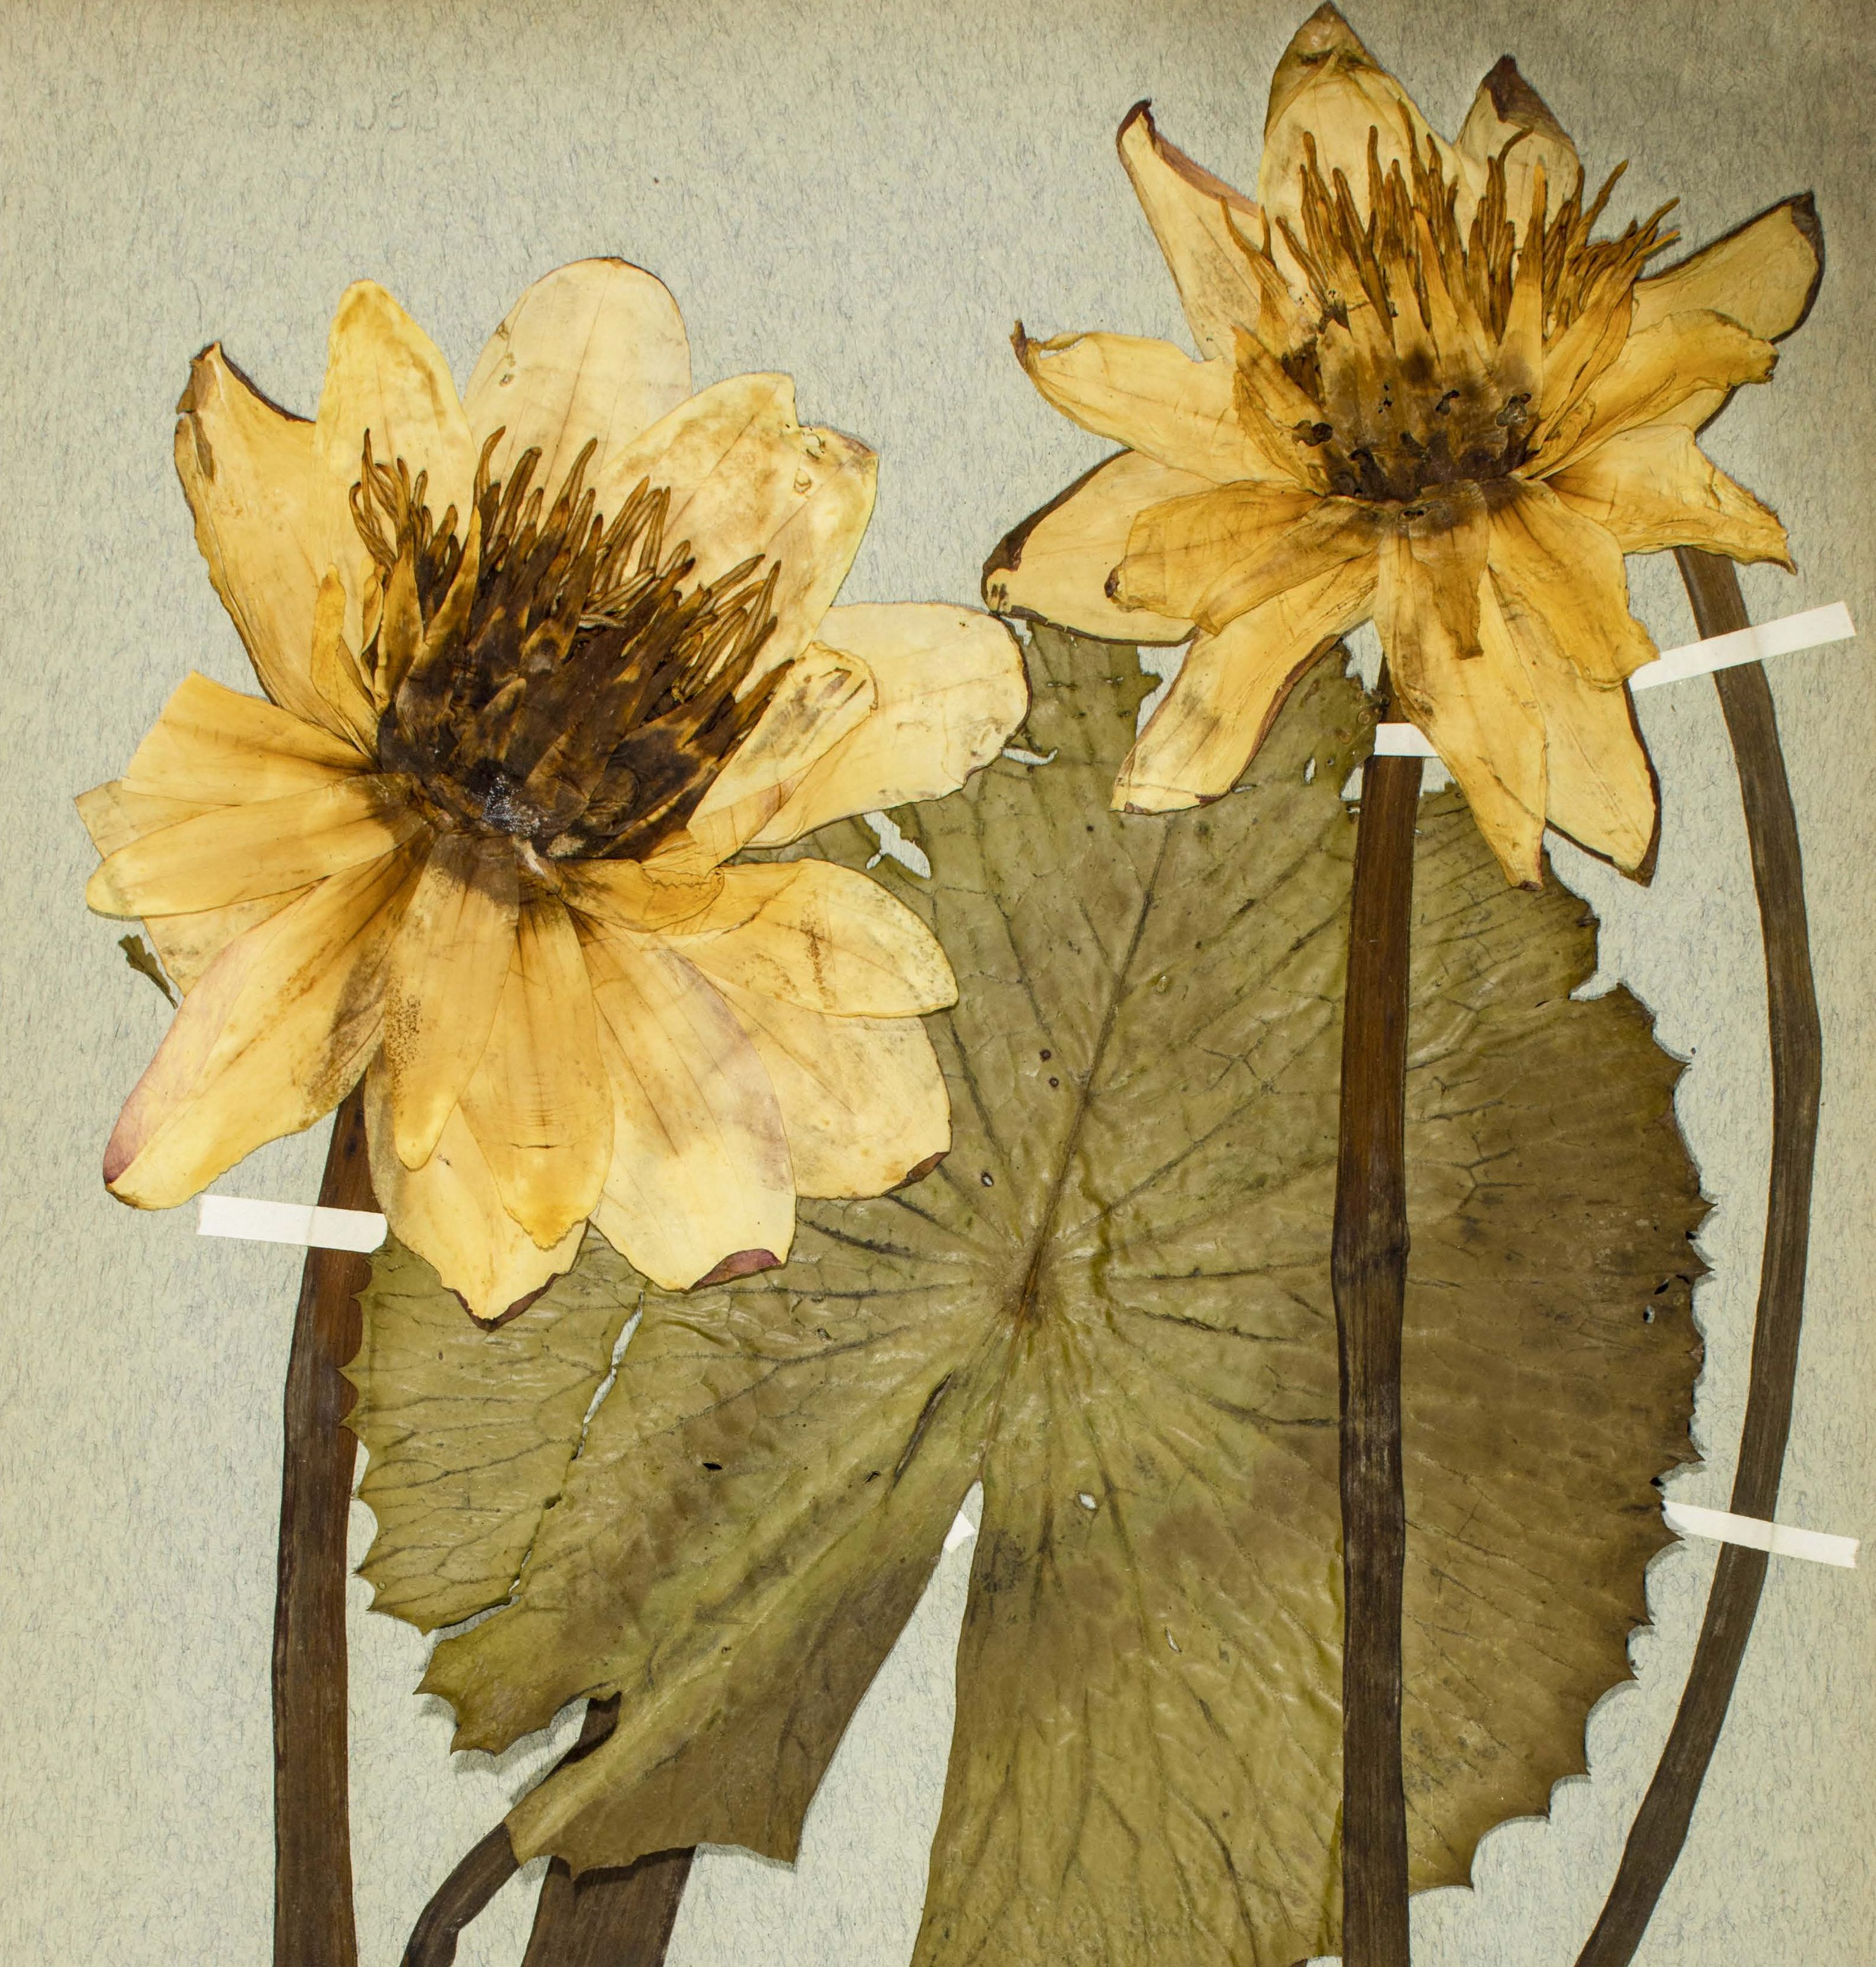 Hévízi tündérrózsa (Nymphaea lotus var. thermalis) nyolcvanéves herbáriumi példánya Soó Rezső gyűjtéséből.